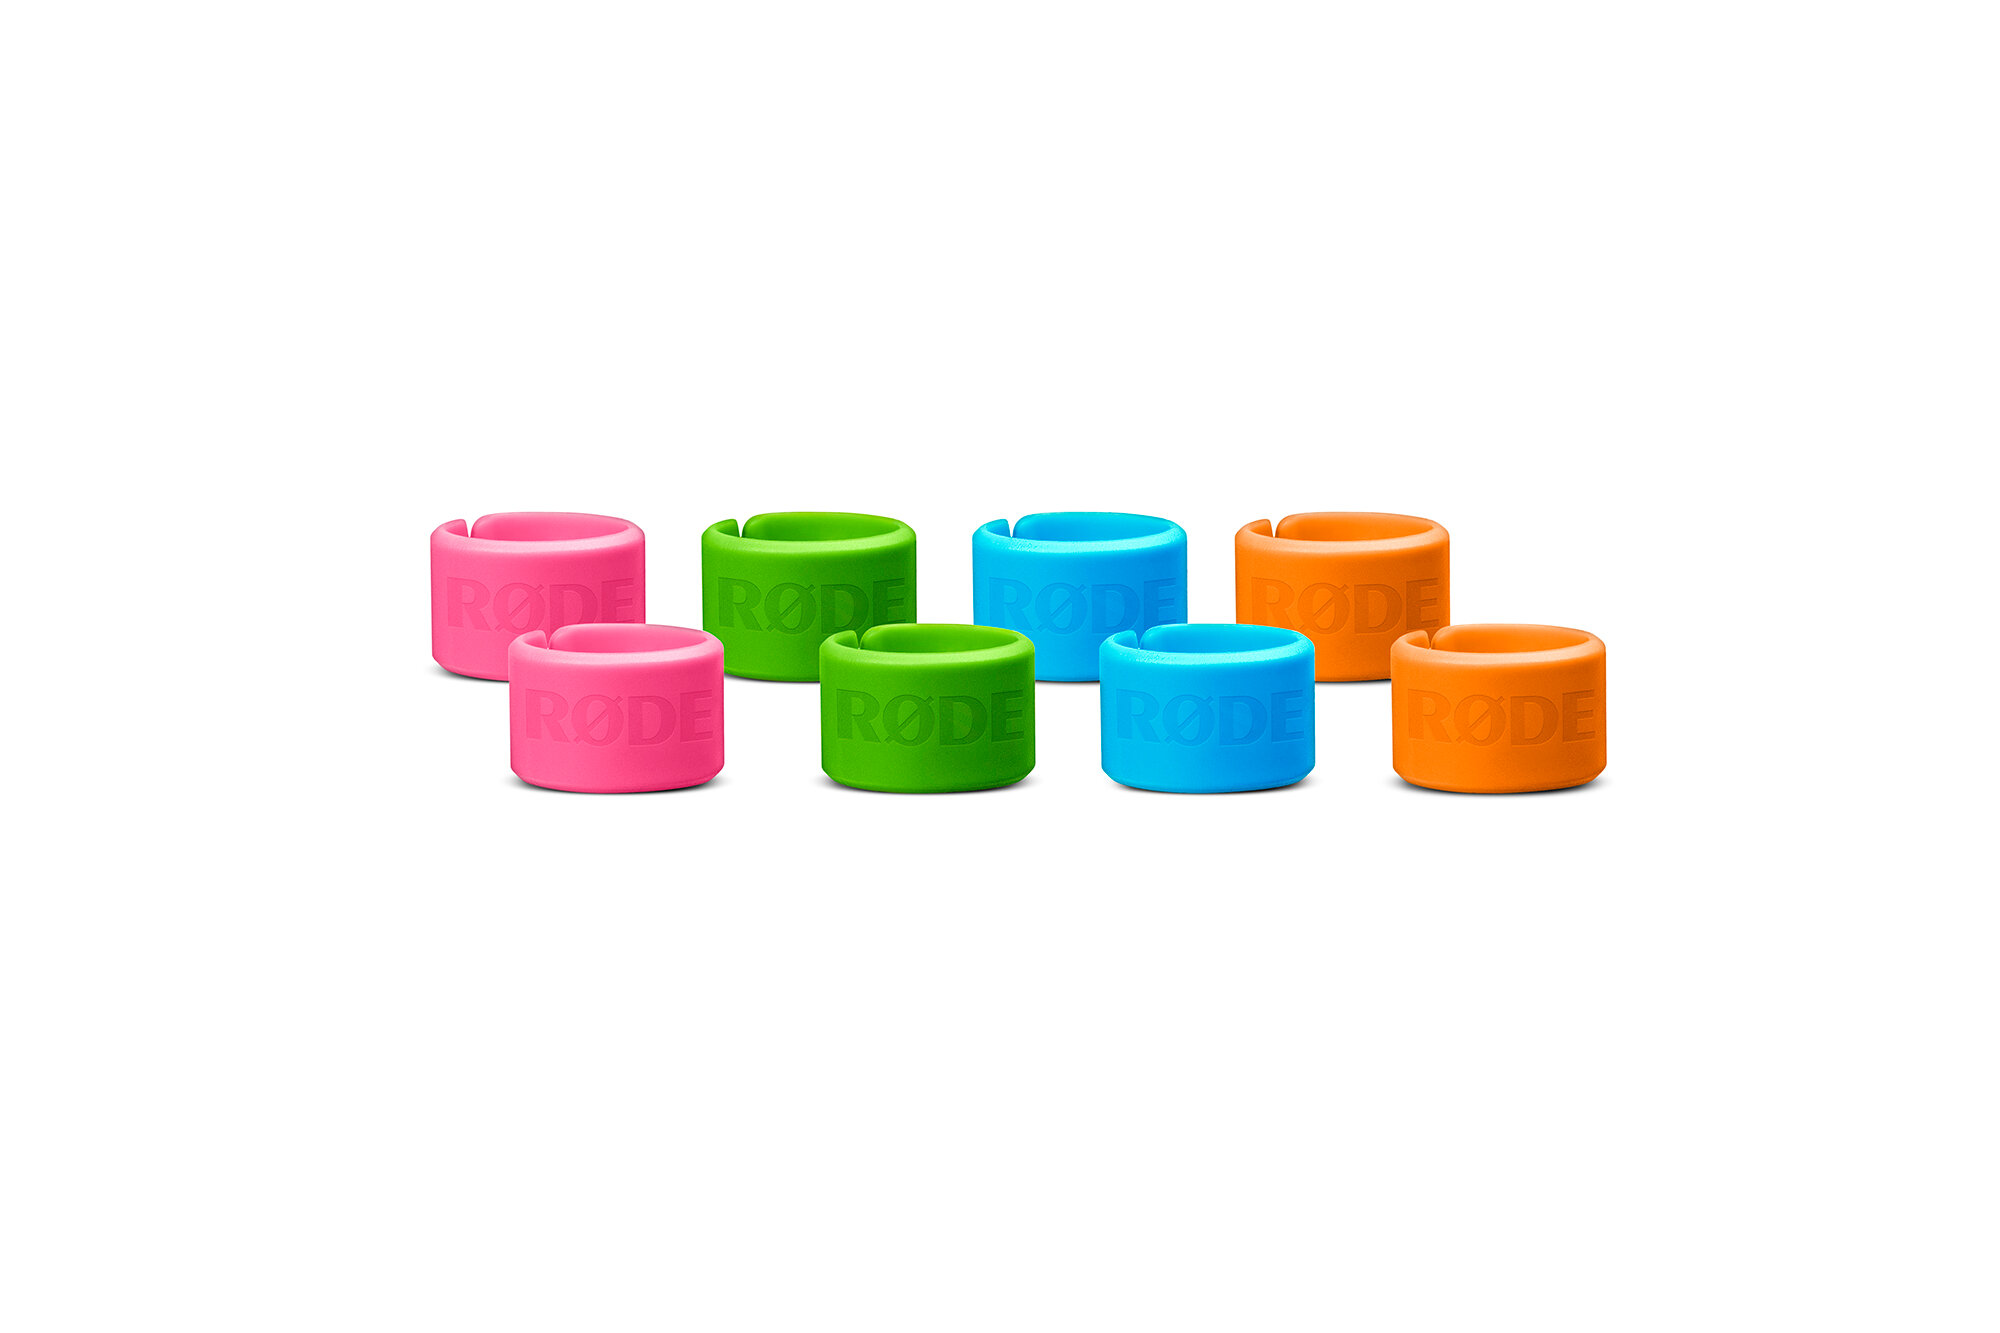 RODE XLR-ID комплект маркировочных колец для XLR разъемов комплект 8 штук по 2 шт каждого цвета